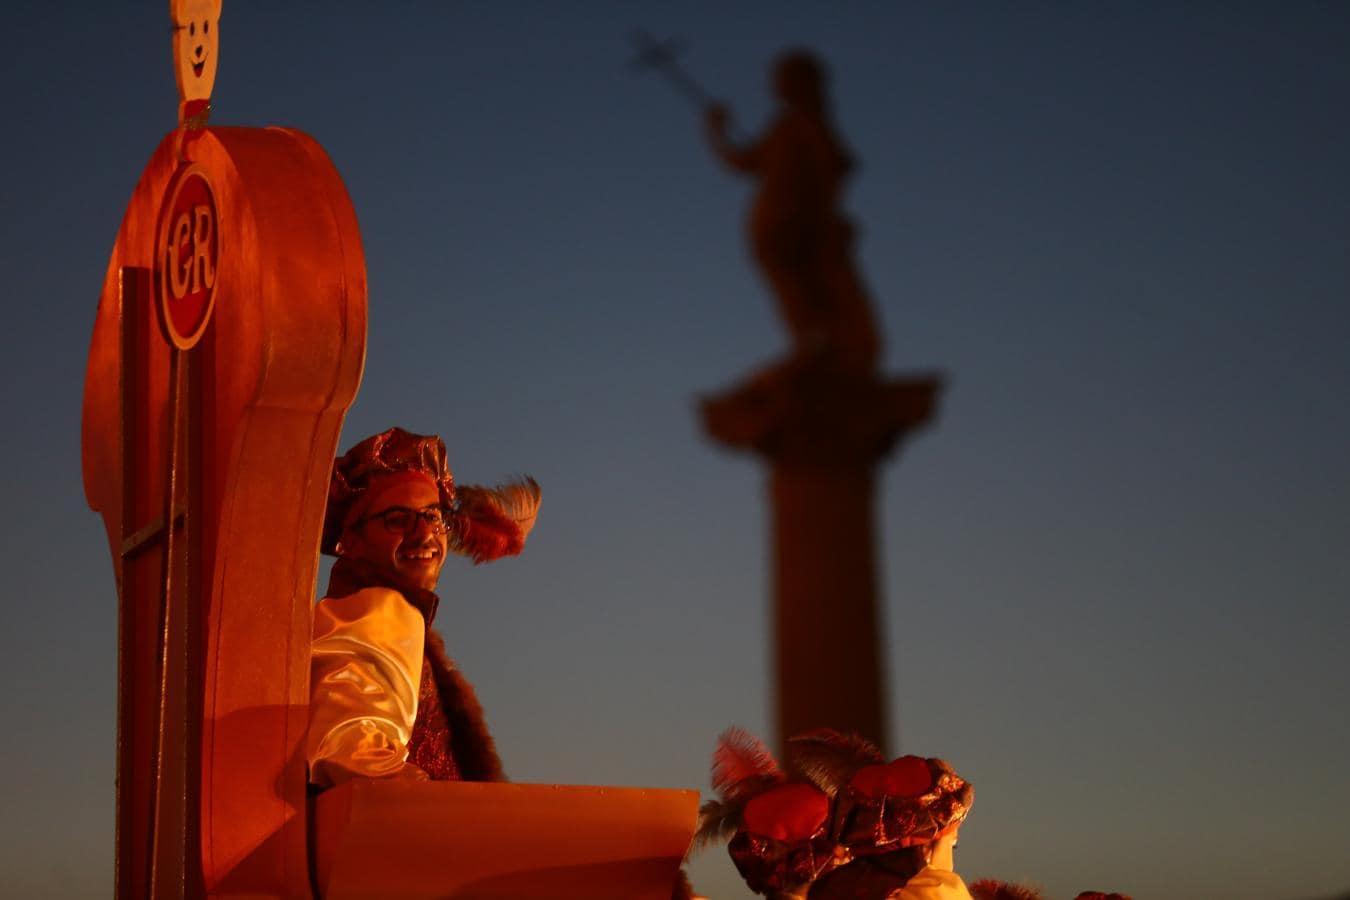 Cabalgata de Reyes Magos en Cádiz 2019